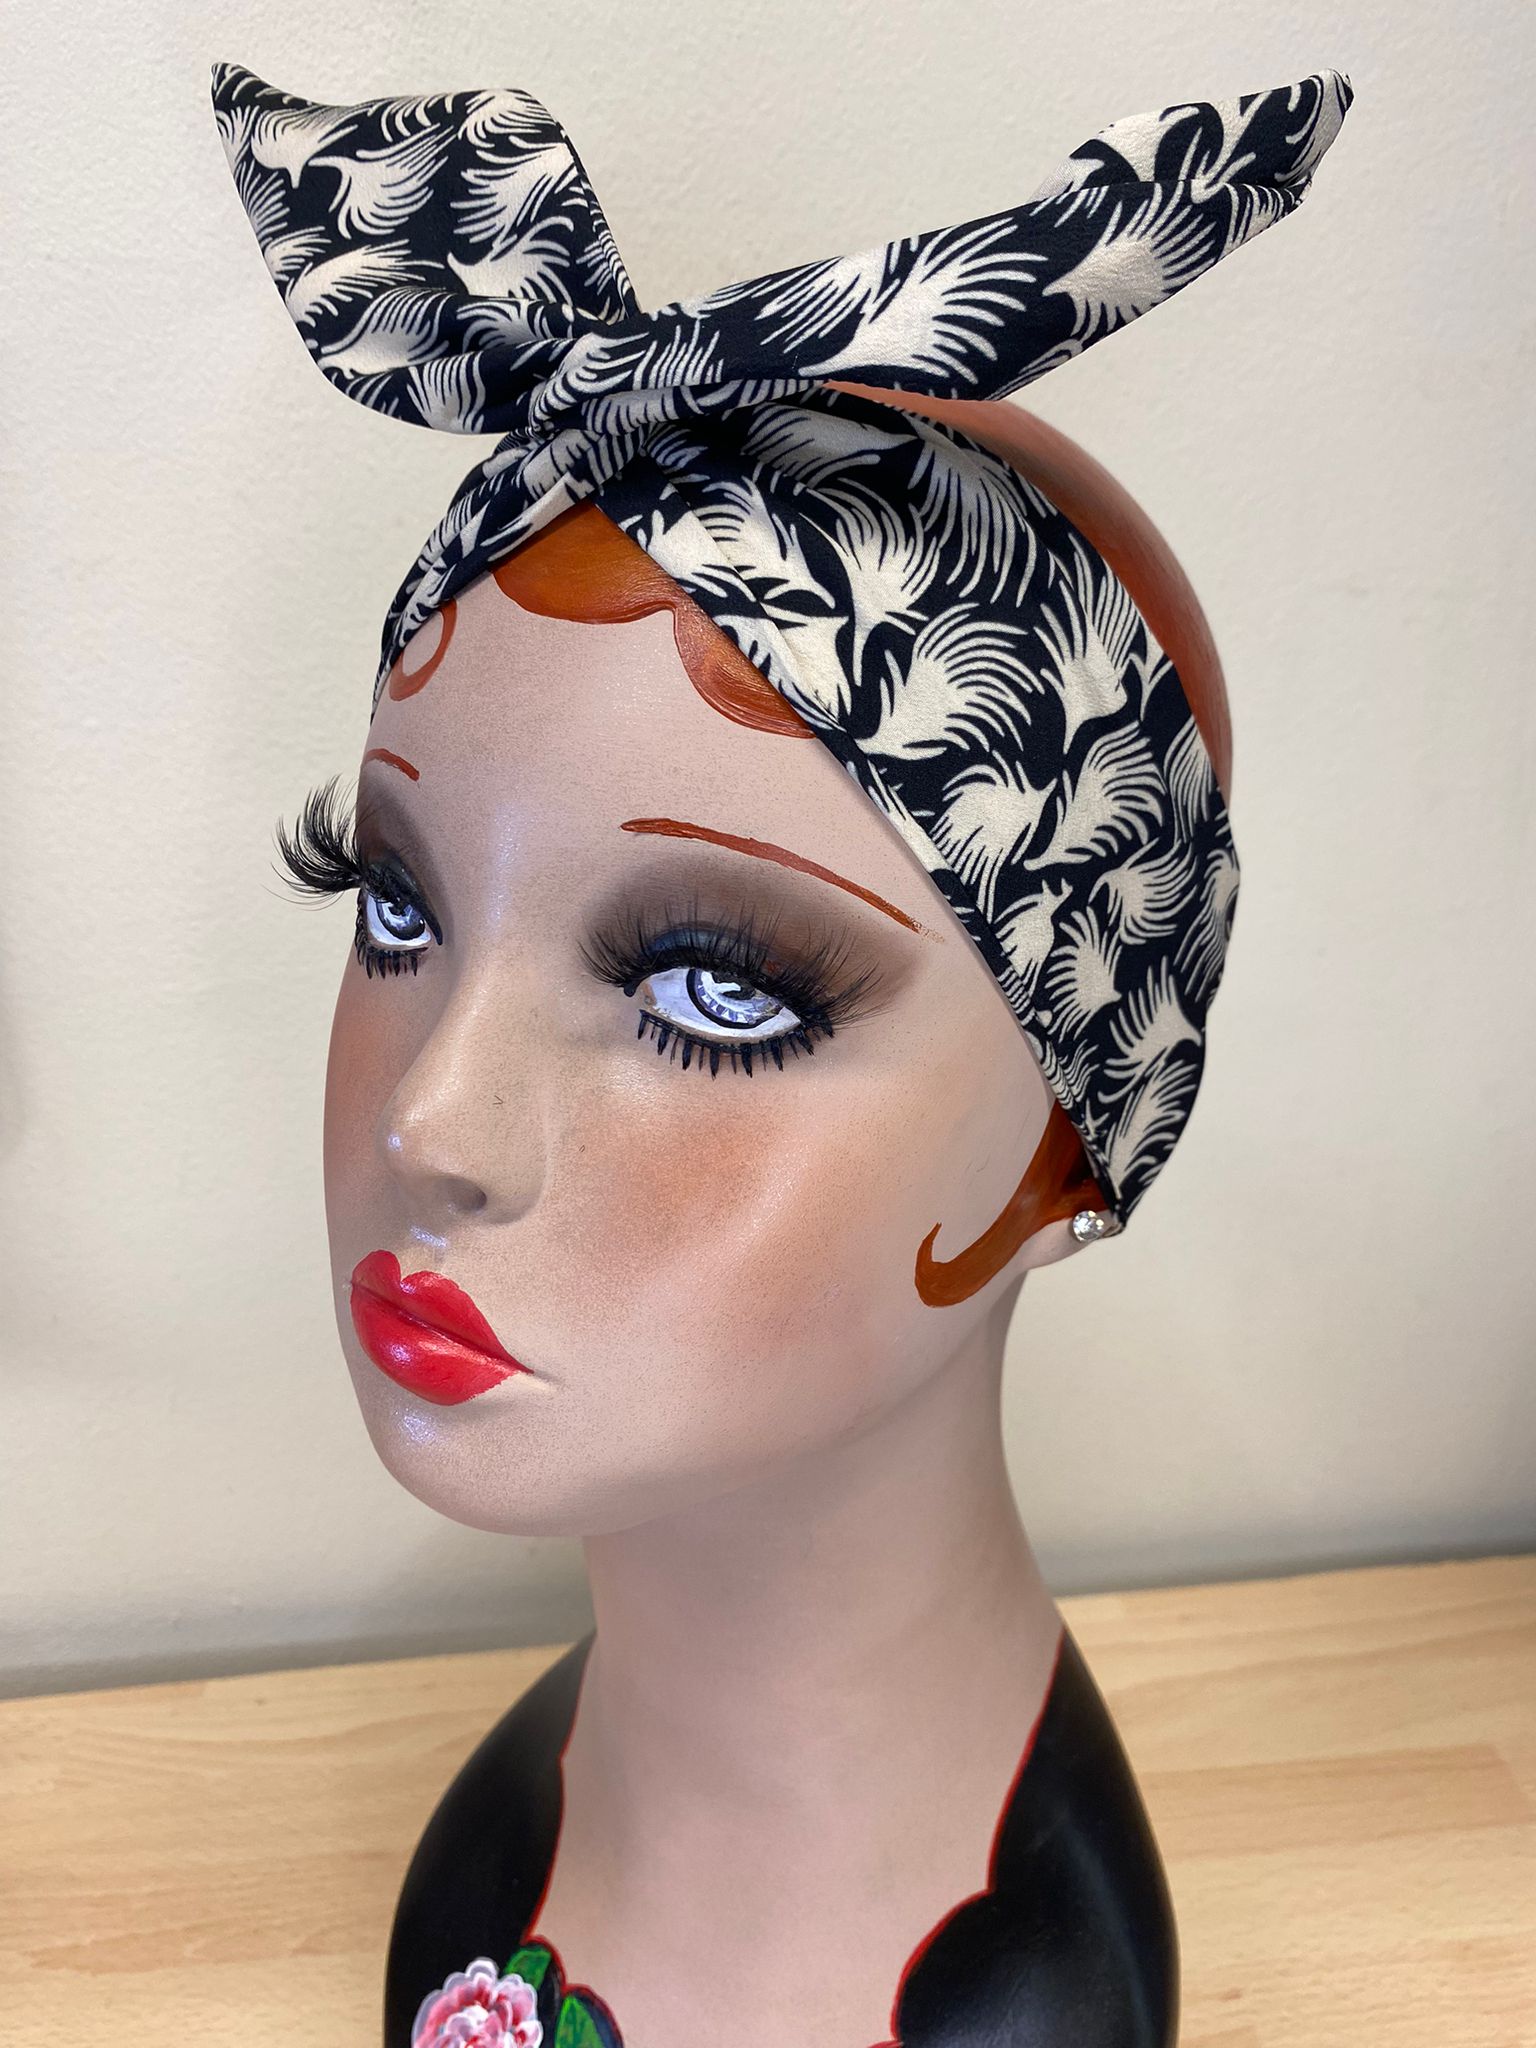 Twist &amp; Go.. Stirnband mit Draht (kein lästiges Knoten oder Schleifen nötig) im Rockabilly-/Landgirl-Stil der 1950er Jahre / 1940er Jahre. Mit schwarzem Whisp-Print